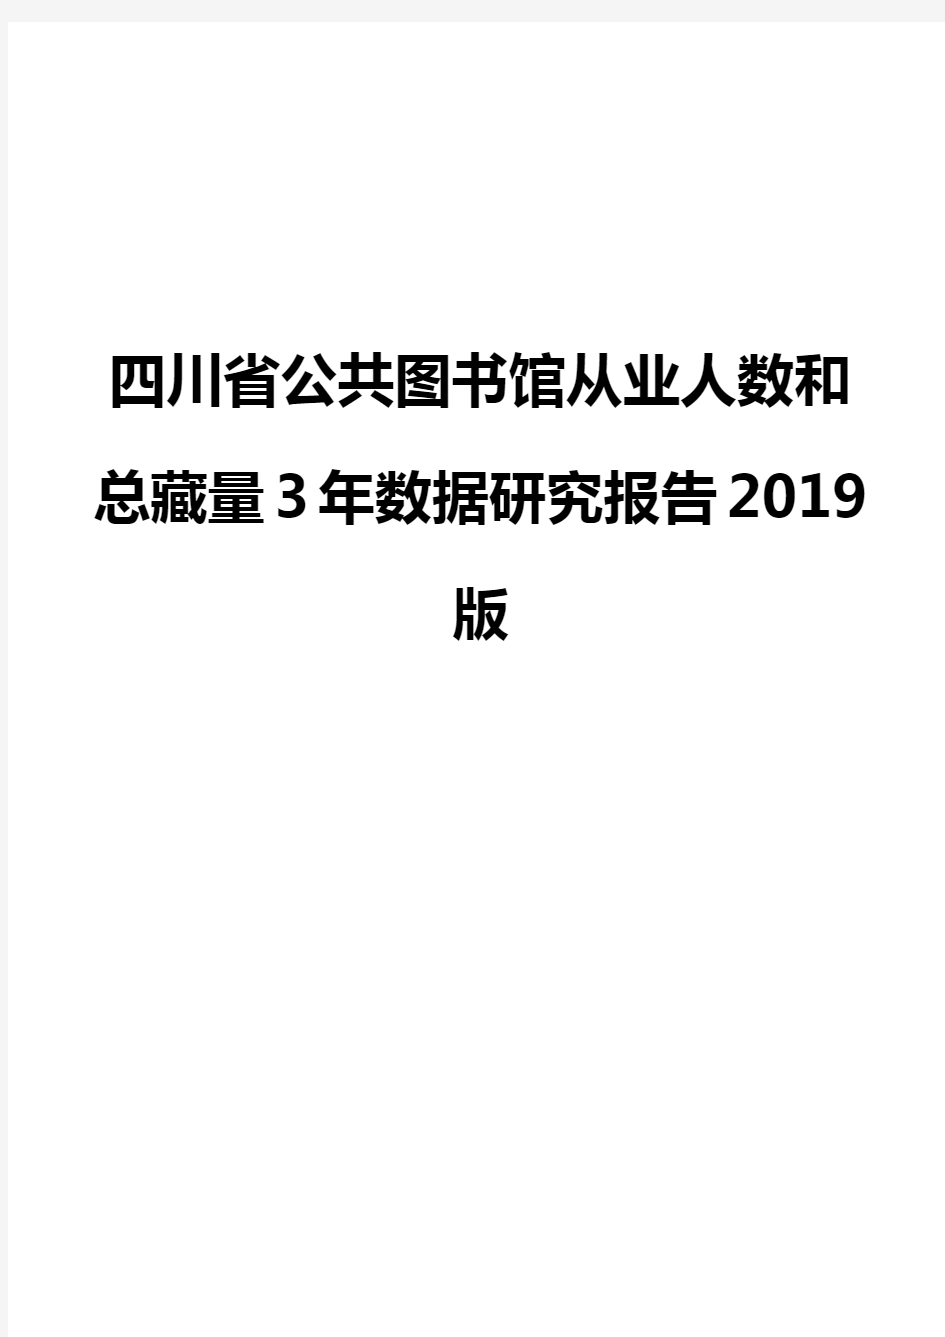 四川省公共图书馆从业人数和总藏量3年数据研究报告2019版